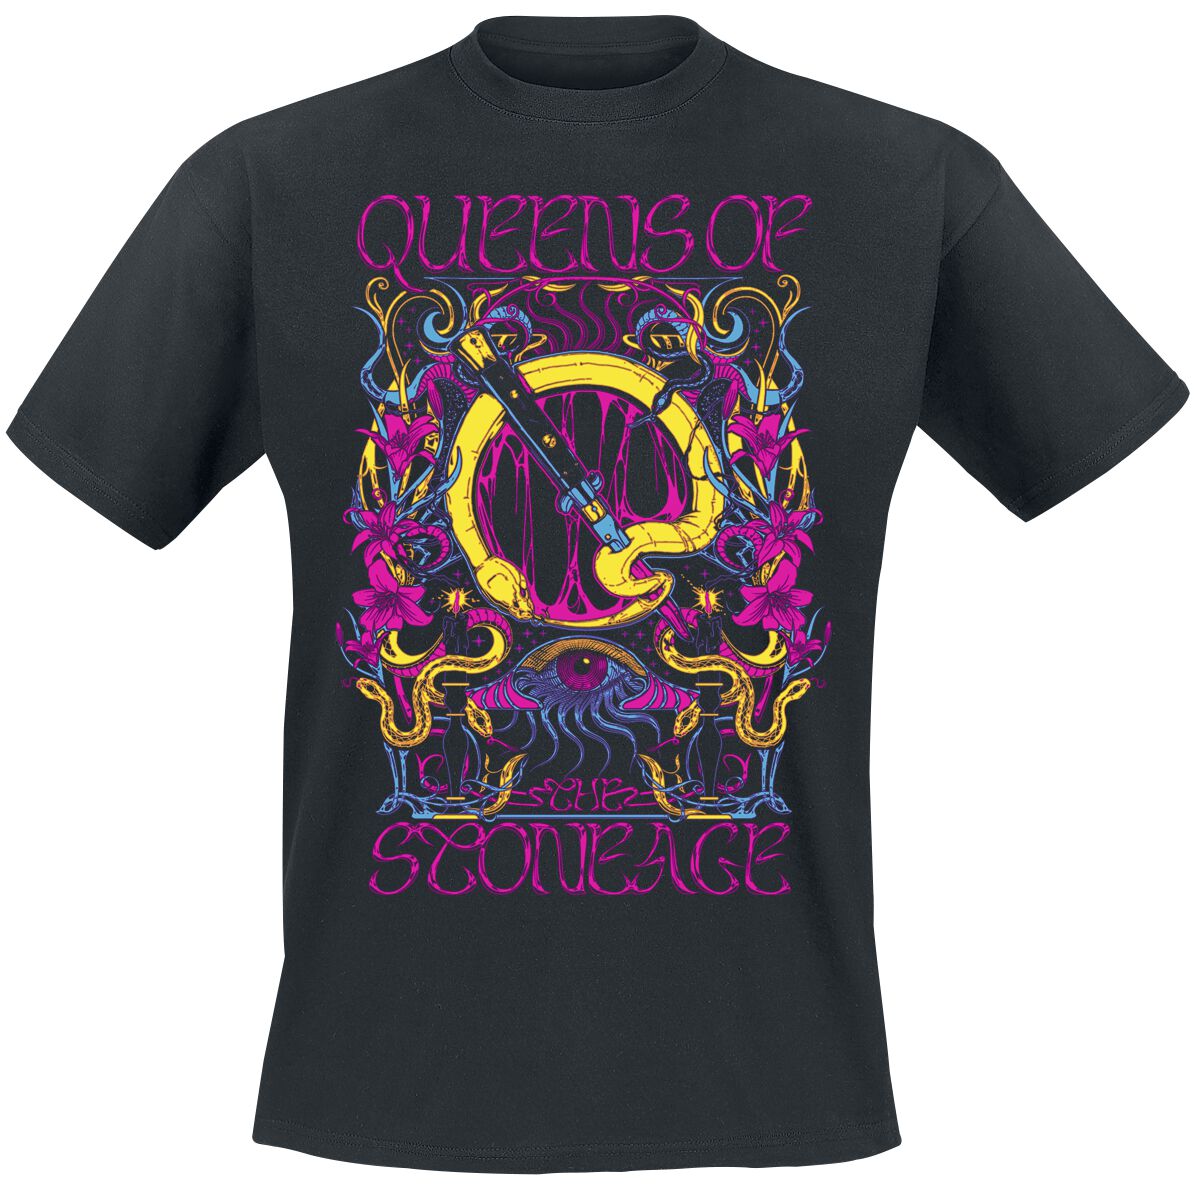 Queens Of The Stone Age T-Shirt - In Times New Roman - Neon Sacrilege - S bis 3XL - für Männer - Größe L - schwarz  - Lizenziertes Merchandise!